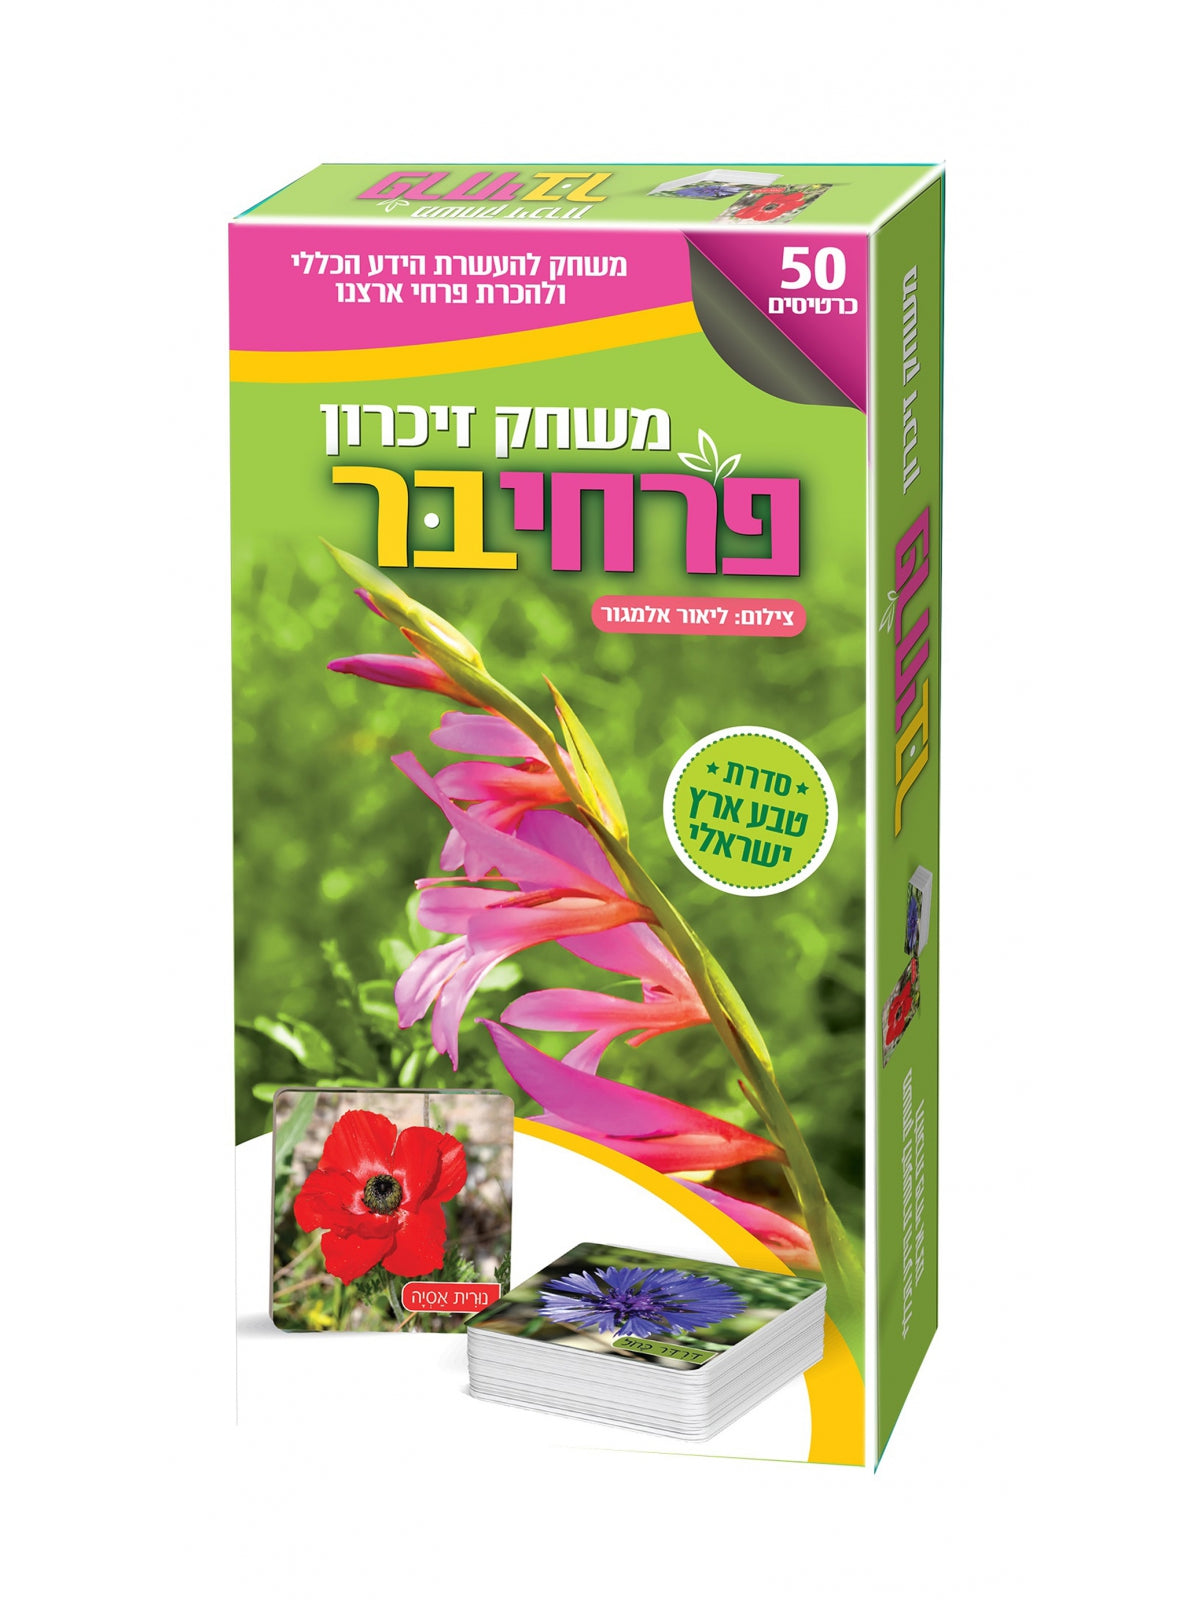 WILD FLOWERS MEMORY GAME - ISRAELI NATURE